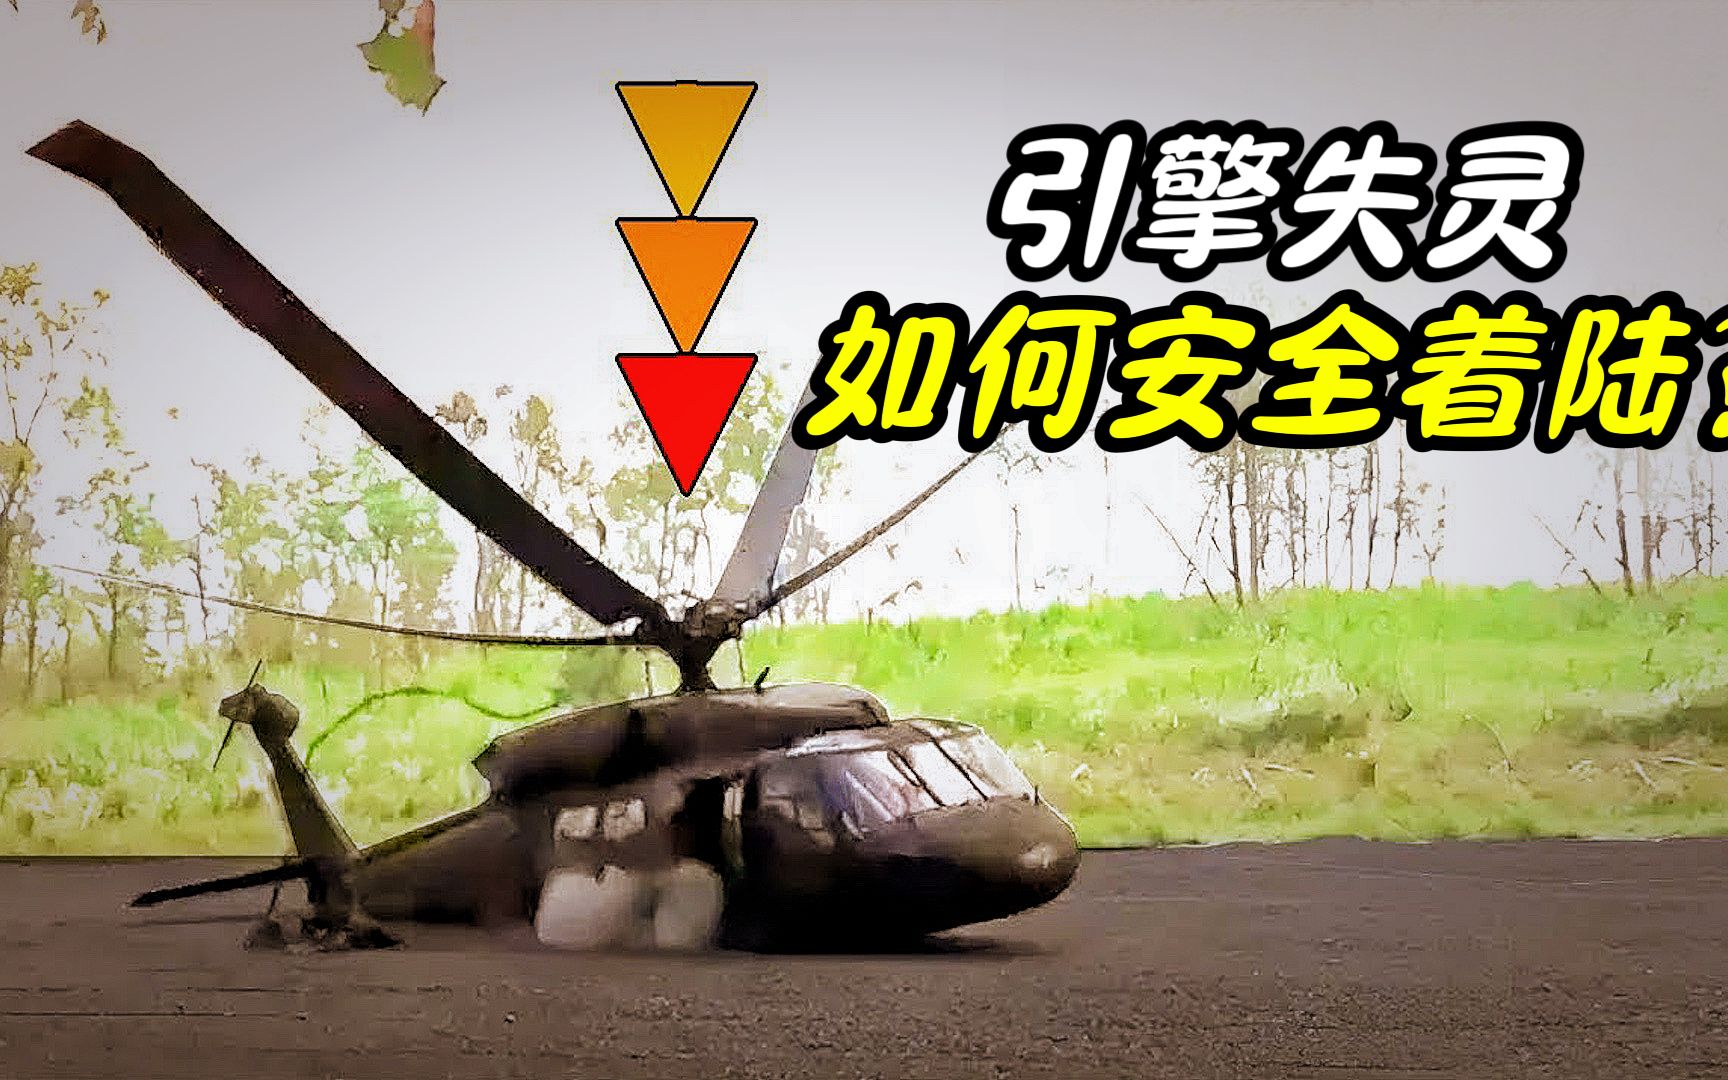 如果直升机引擎突然失灵，怎样才能安全着陆？